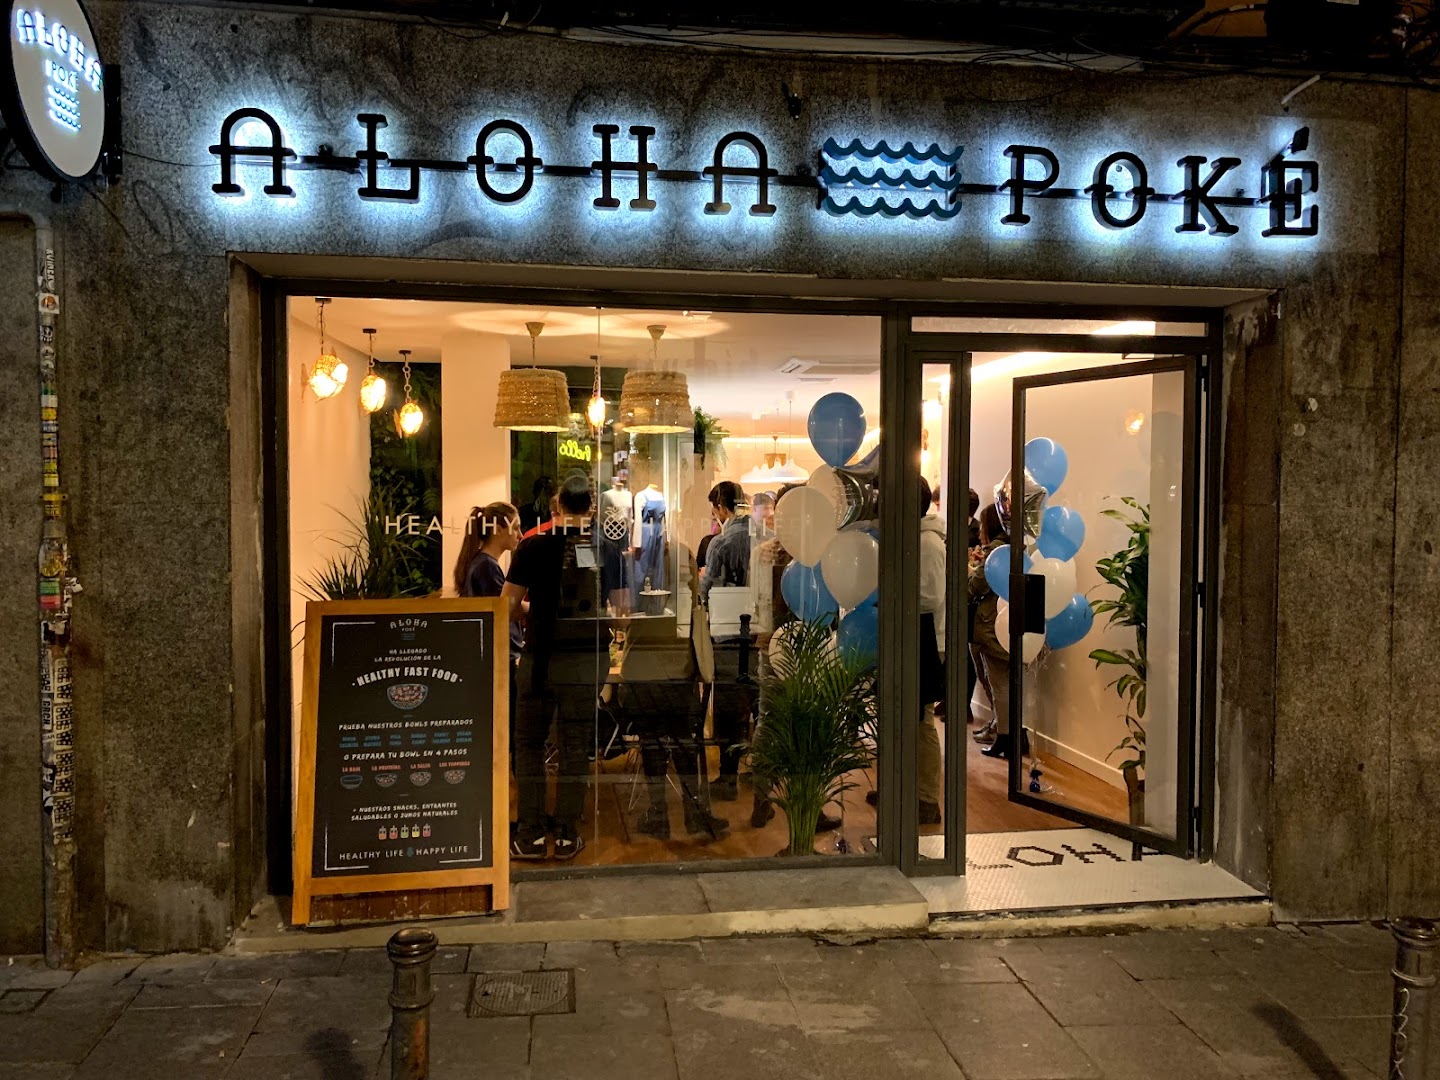 Aloha Poké